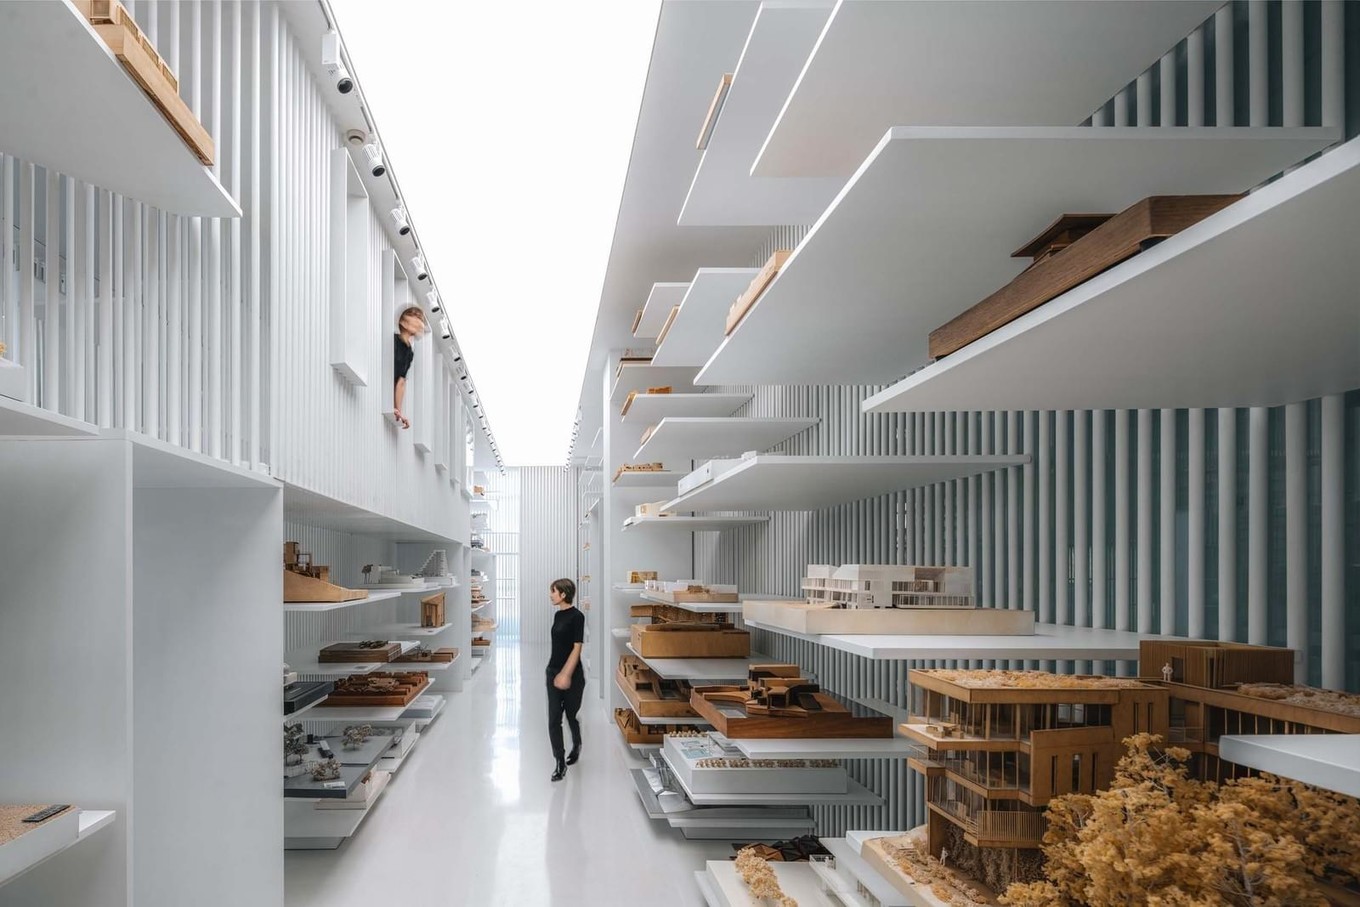 Музей архитектурных моделей в Китае города, трубы, музея, будущего, Redoubt, стальные, впечатлению, образуют, размерам, модели, городеМногочисленные, вертикальном, области, разделяют, вместе, чтобы, непрерывные, опорных, конструкций, присутствие